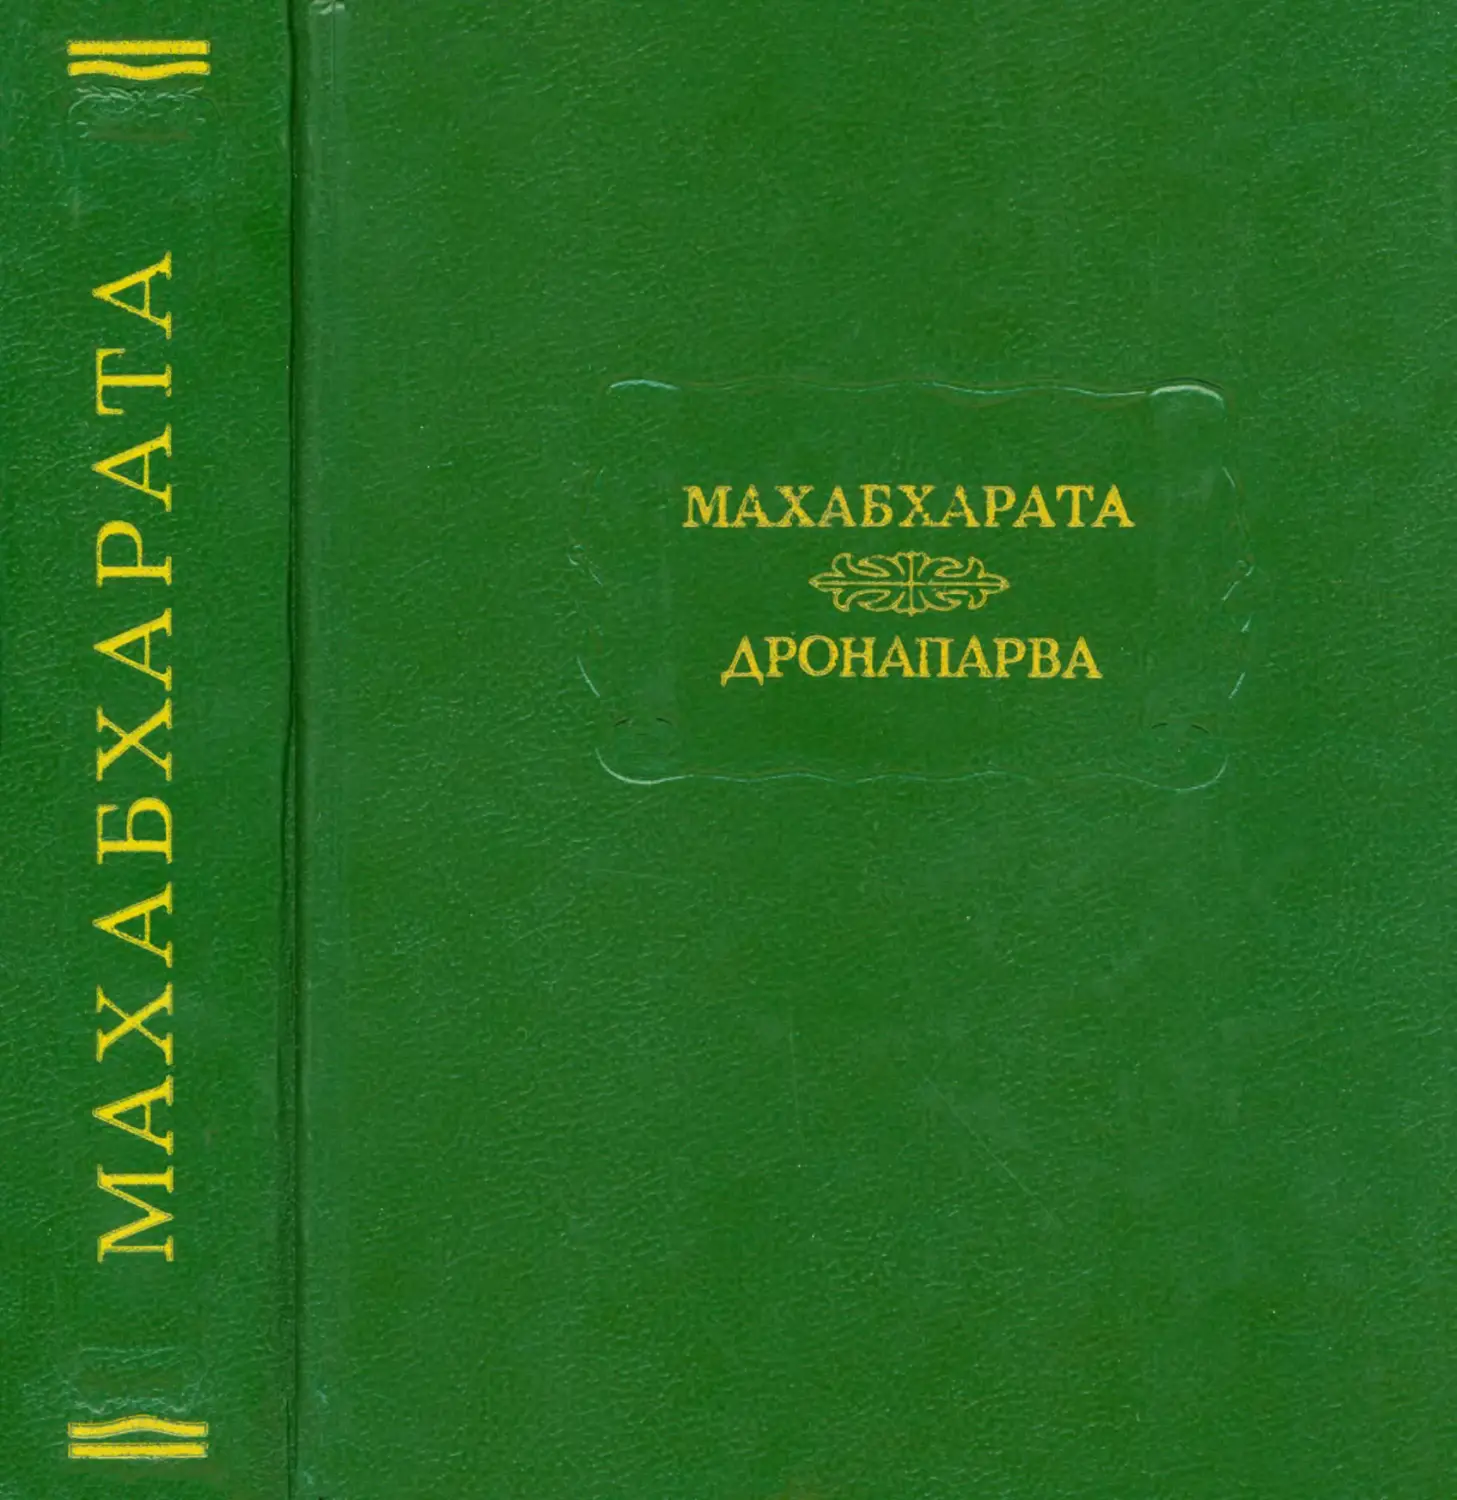 Махабхарата. Книга седьмая. Дронапарва или Книга о Дроне - 1993